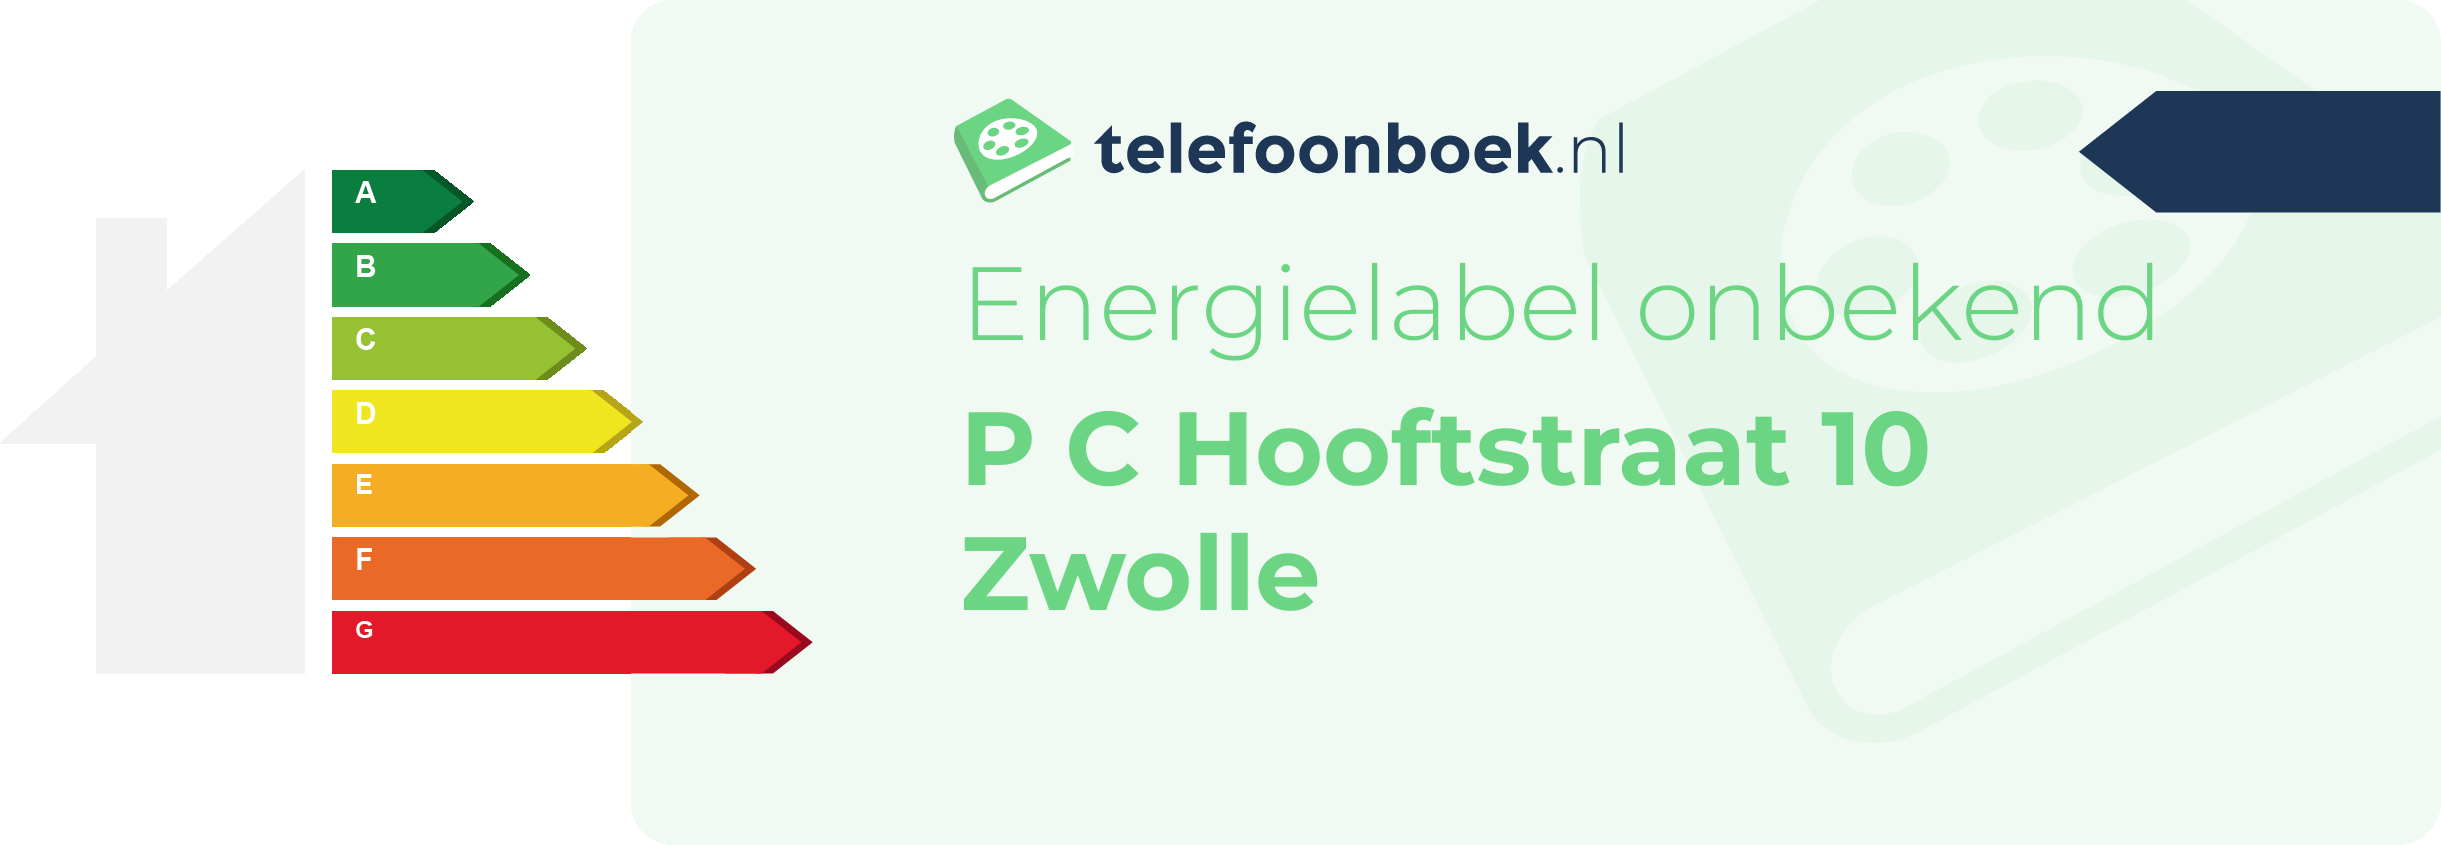 Energielabel P C Hooftstraat 10 Zwolle